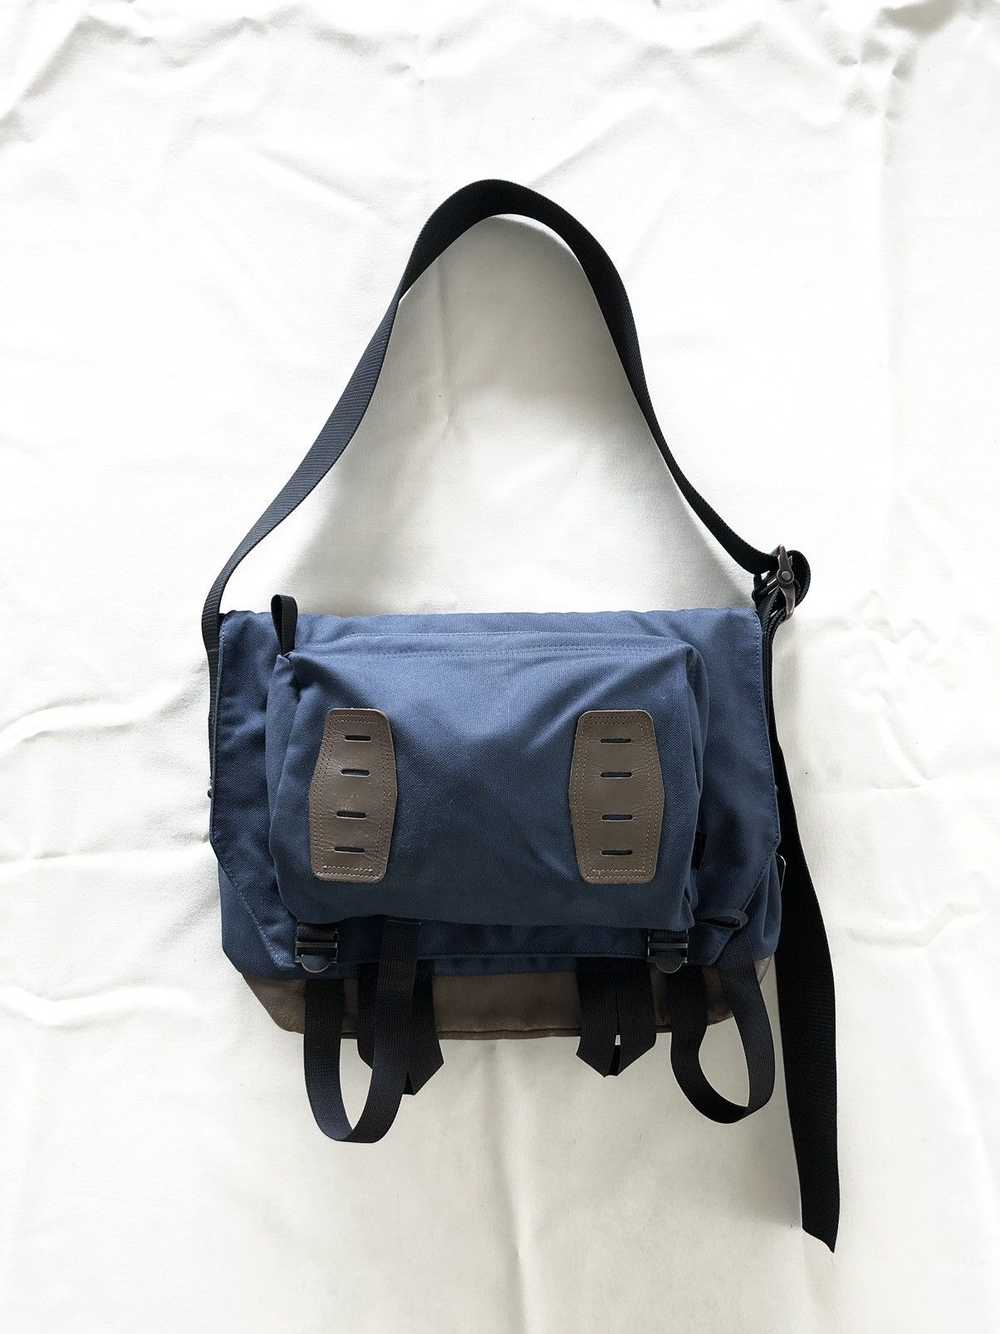 Japanese Brand × Porter porter slingbag - image 1